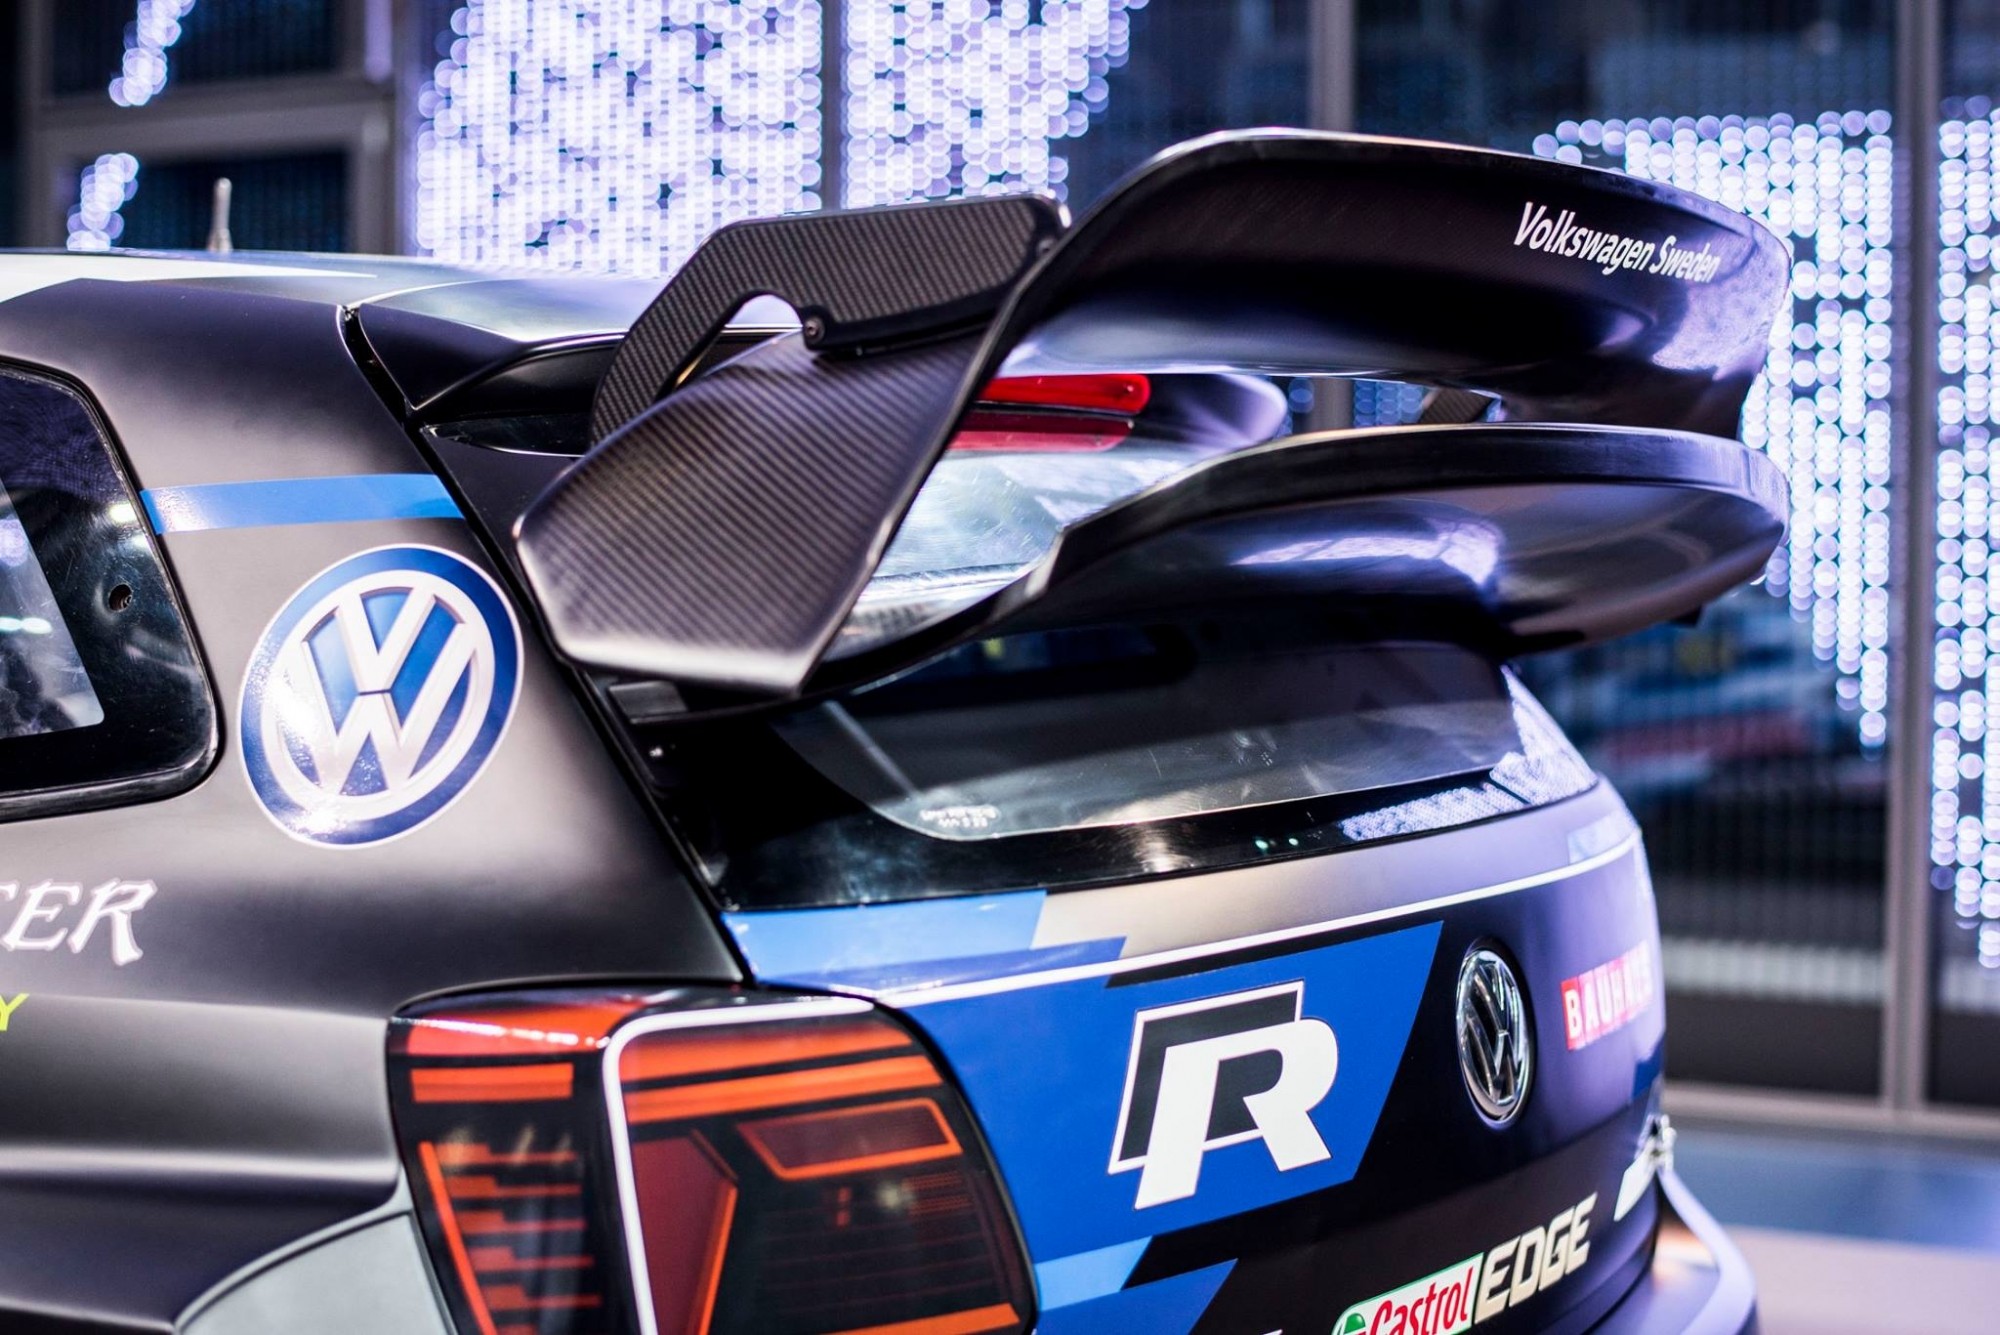 Заднее антикрыло фактически заимствовано с мертворождённой Volkswagen Polo R WRC 2017 года